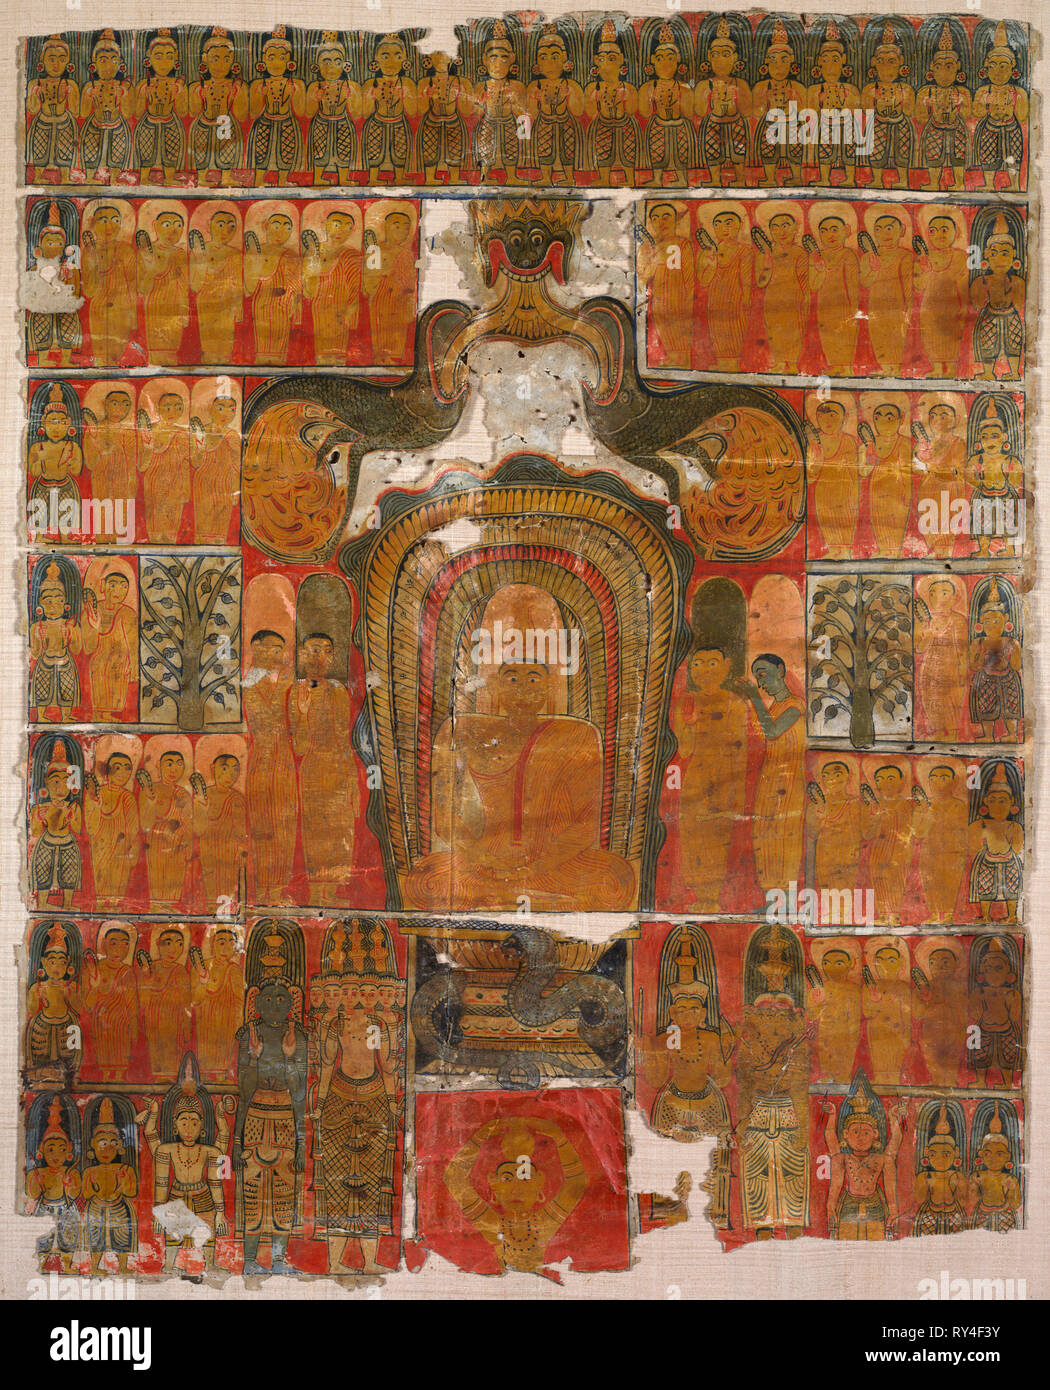 Bénis Seigneur Bouddha, années 1700. Ceylan, Kandy, 18e siècle. Encre et couleur sur papier ; total : 57,8 x 48,3 cm (22 3/4 x 19 po Banque D'Images